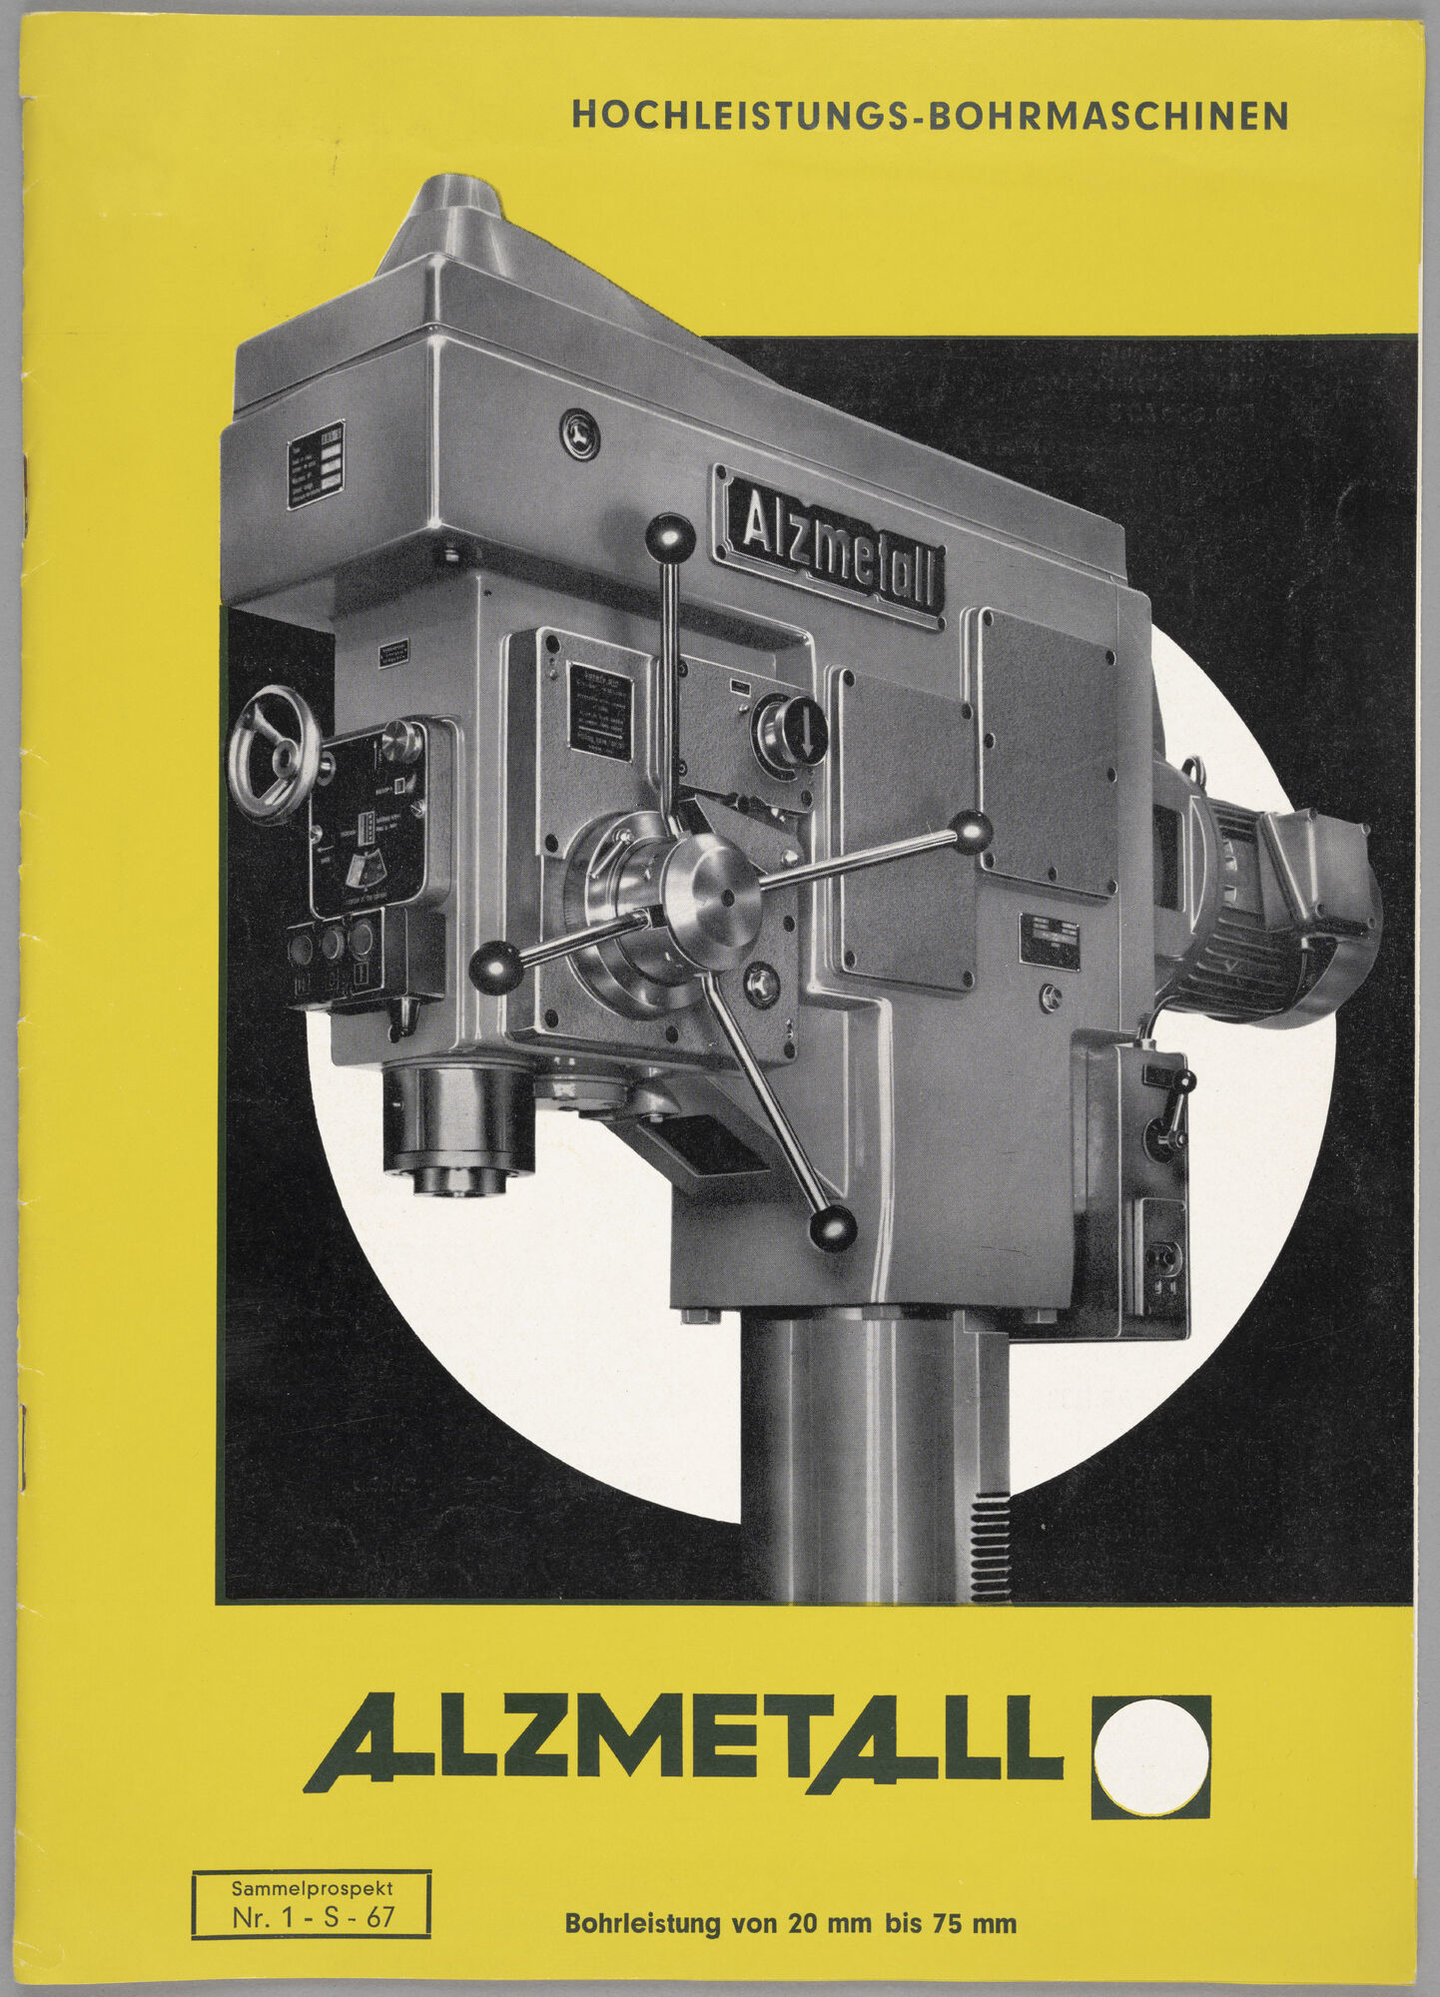 Productbrochure met kolomboormachines van het merk Alzmetall